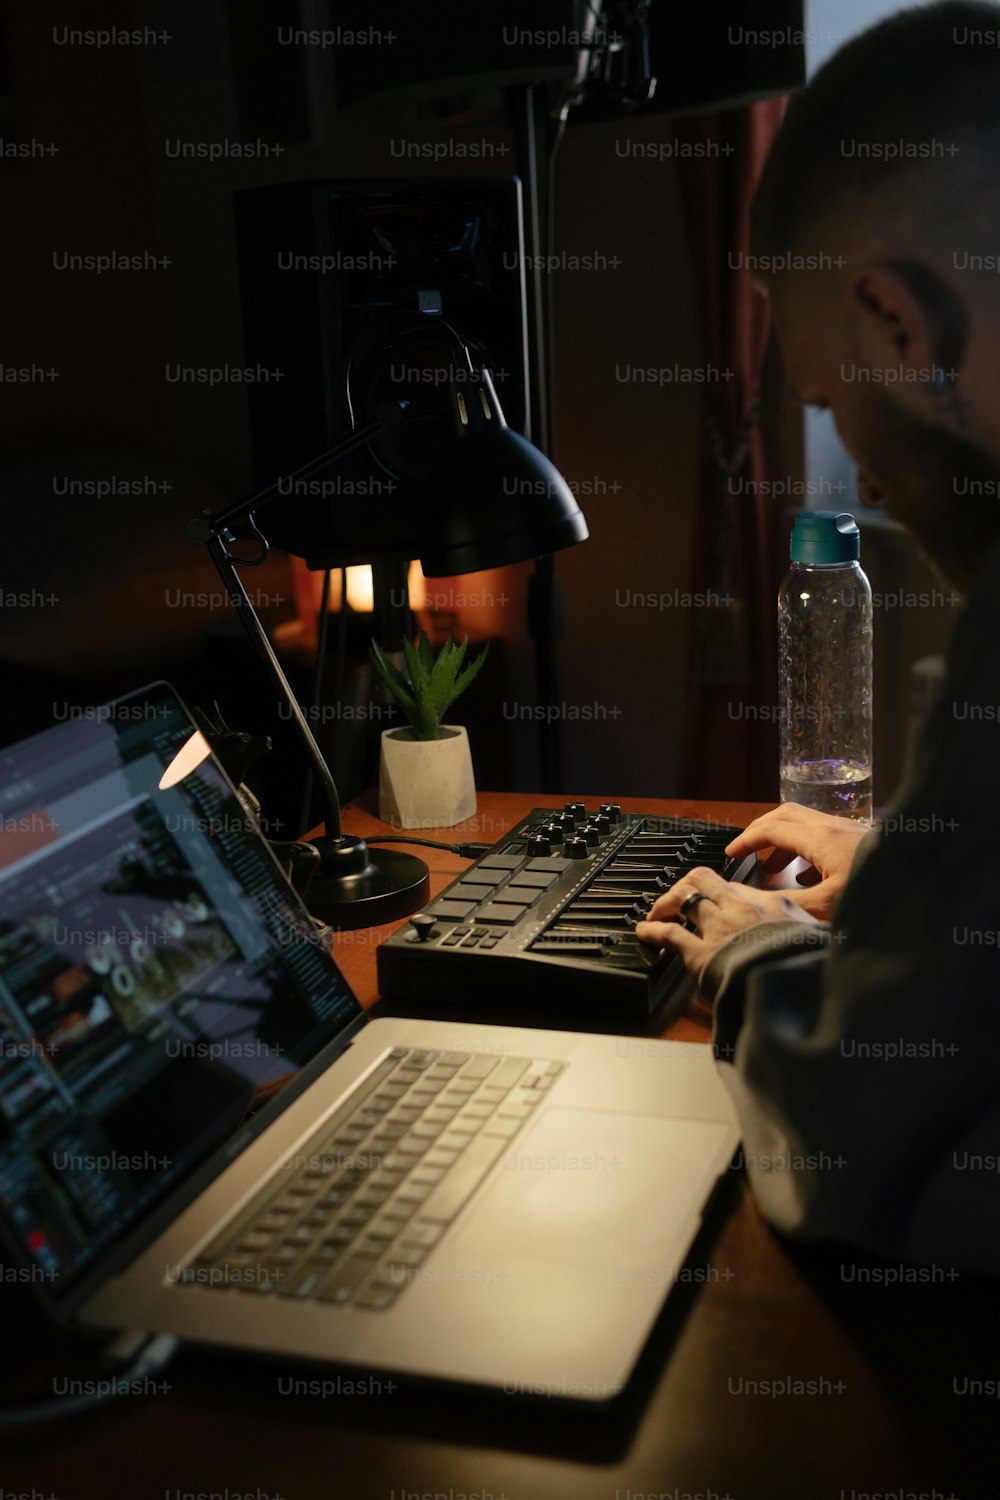 노트북 컴퓨터 앞에 앉아있는 남자